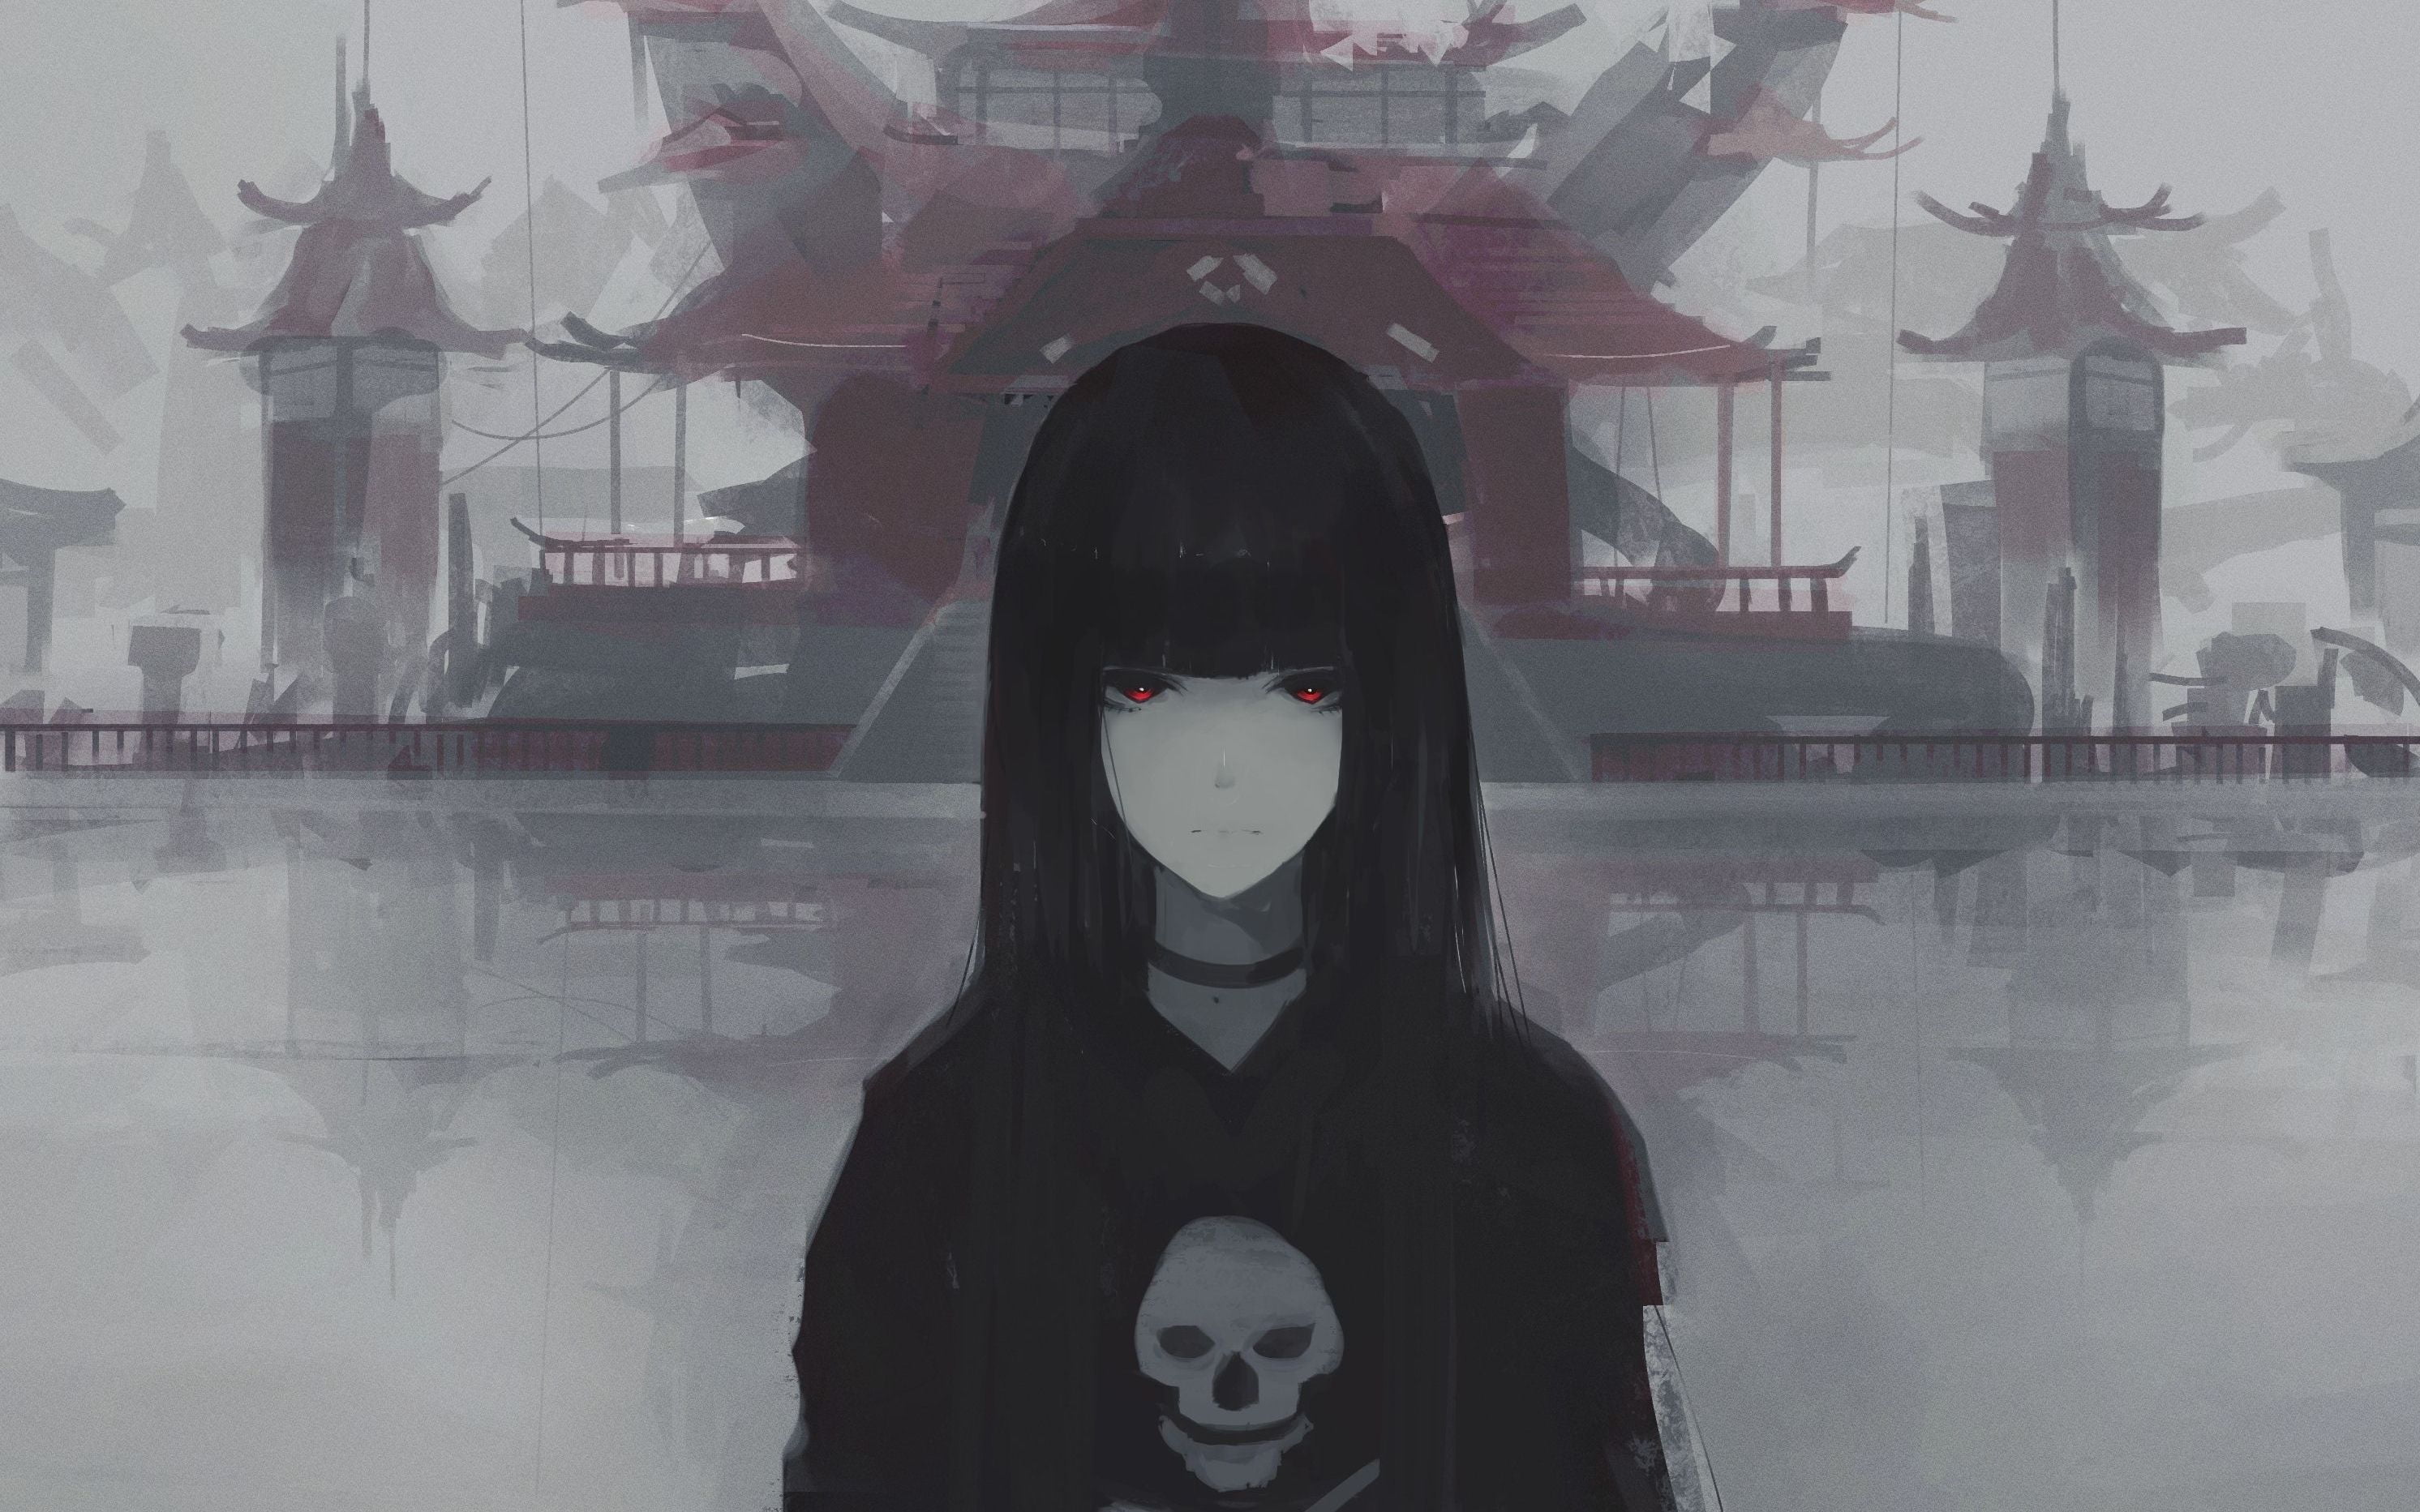 Female Anime Character Illustration Skull Black Hair Red Eyes Hd Wallpaper Wallpaper Flare